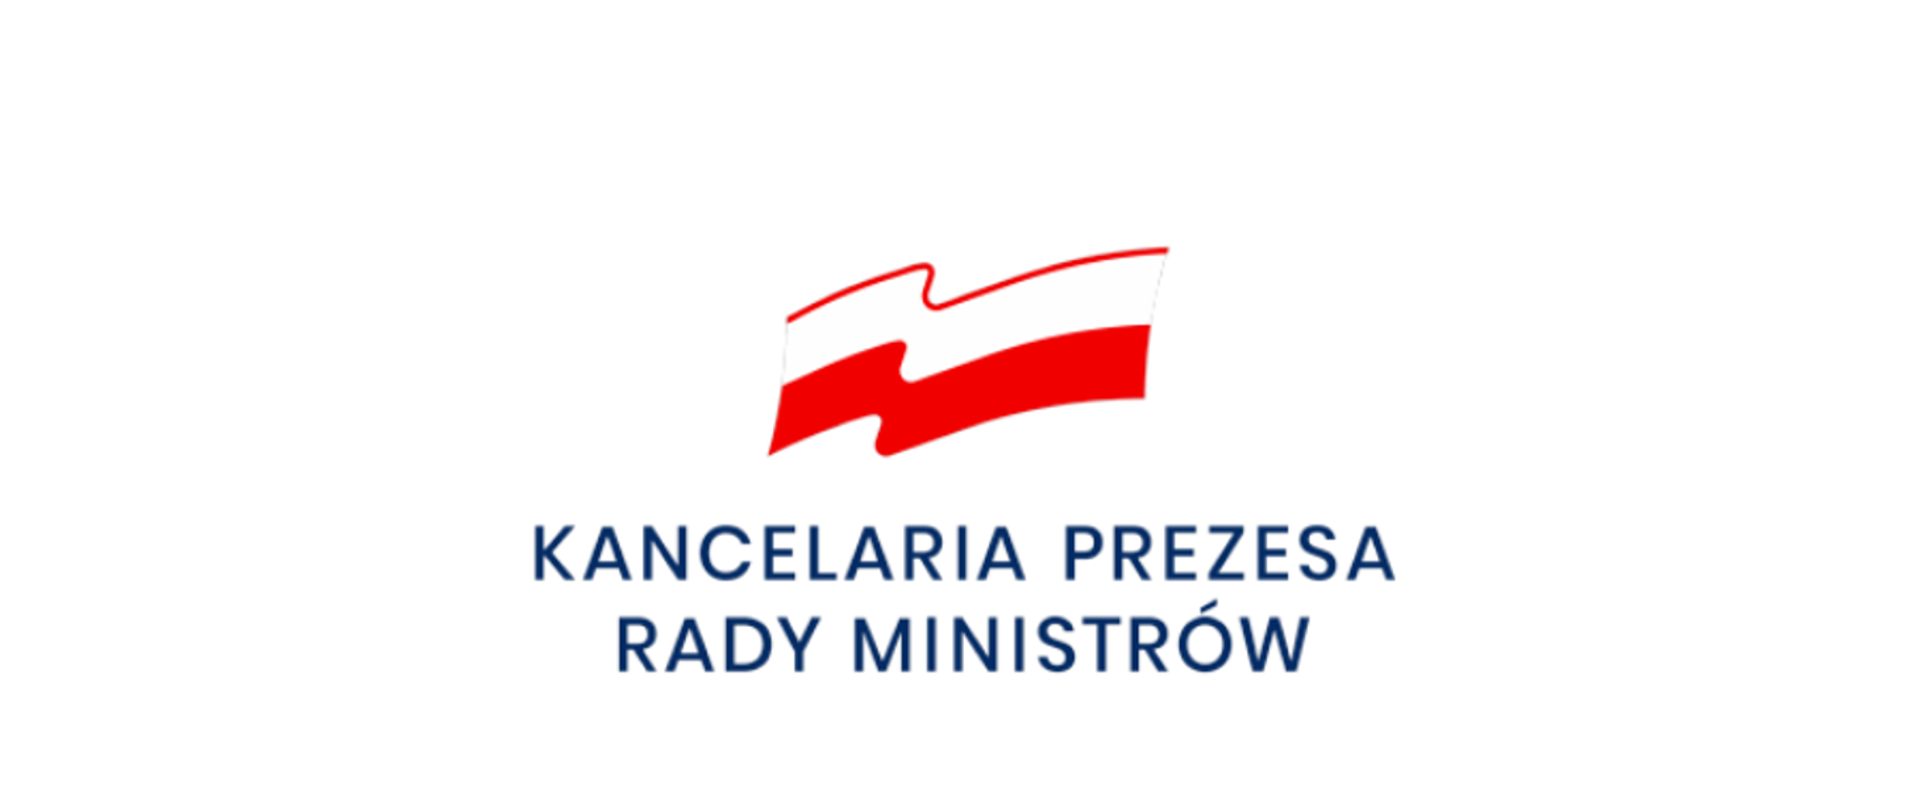 Na zdjęciu Logo Kancelarii Prezesa Rady Ministrów